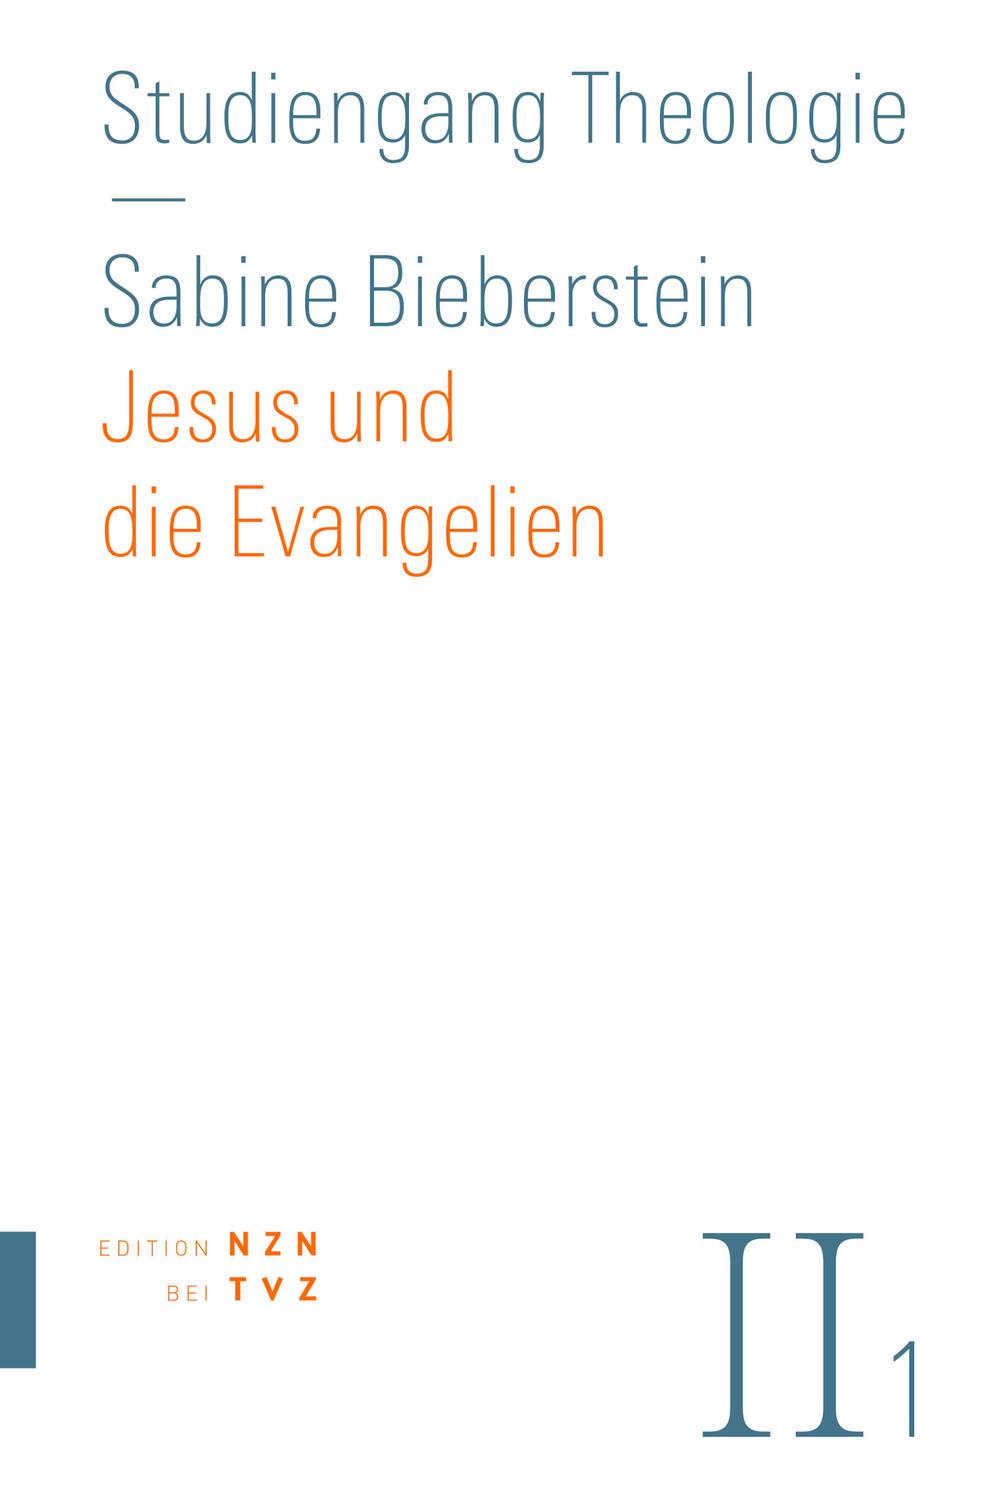 Jesus und die Evangelien - Sabine Bieberstein,,